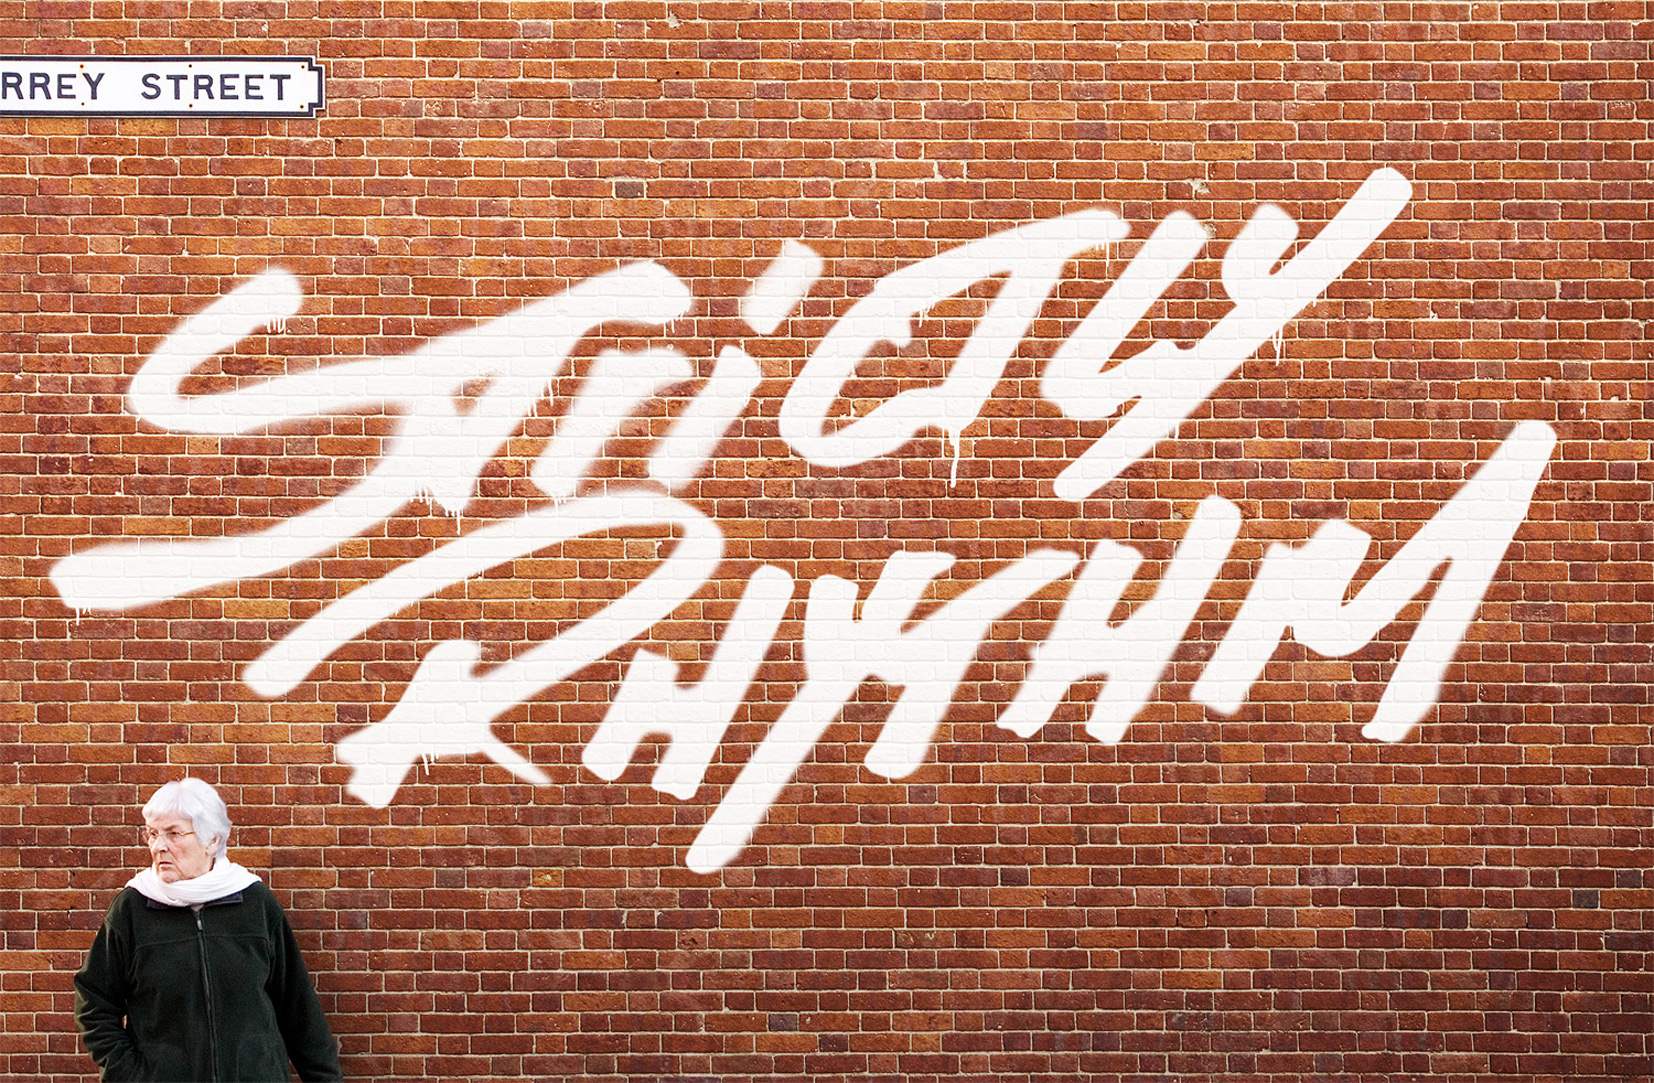 Strictly Rhythm Logo Wall